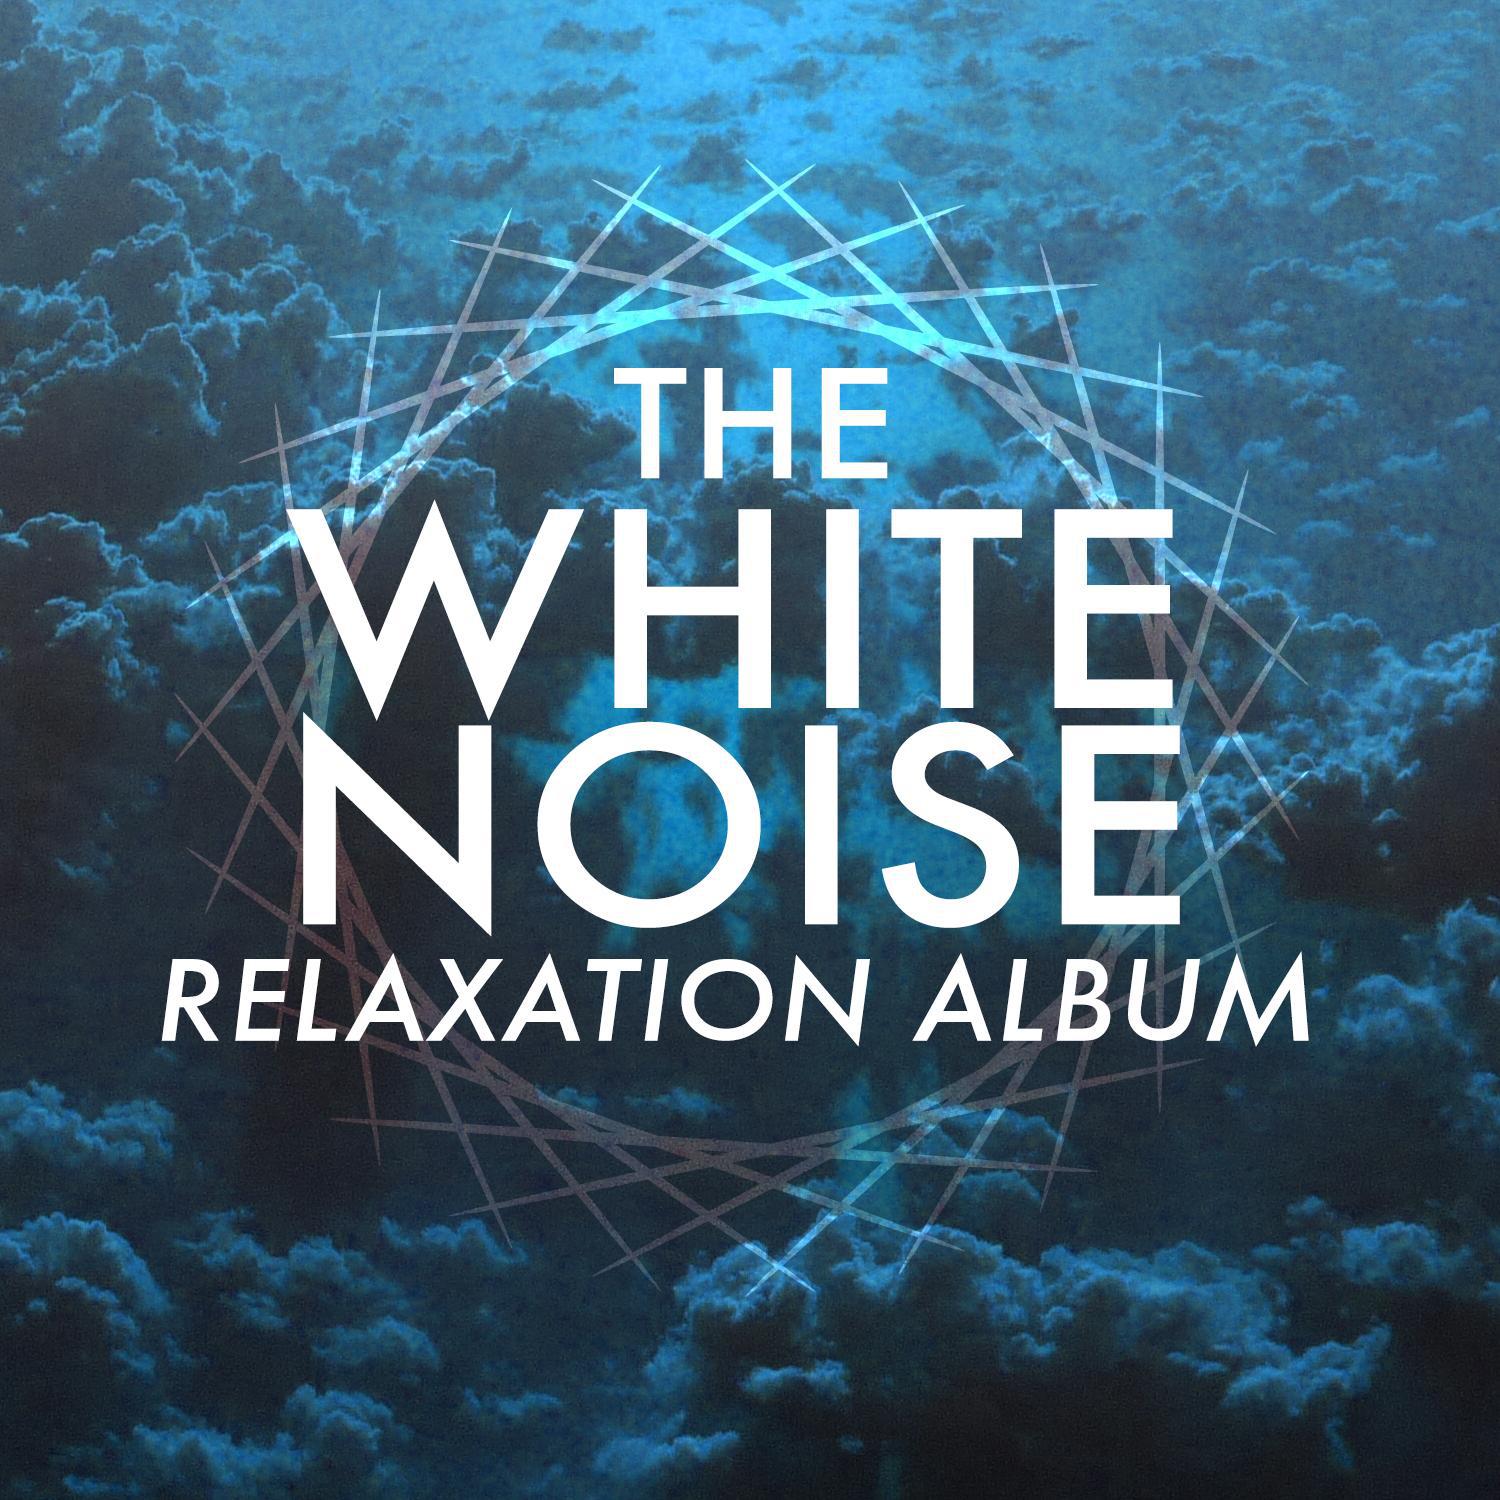 The White Noise Relaxation Album